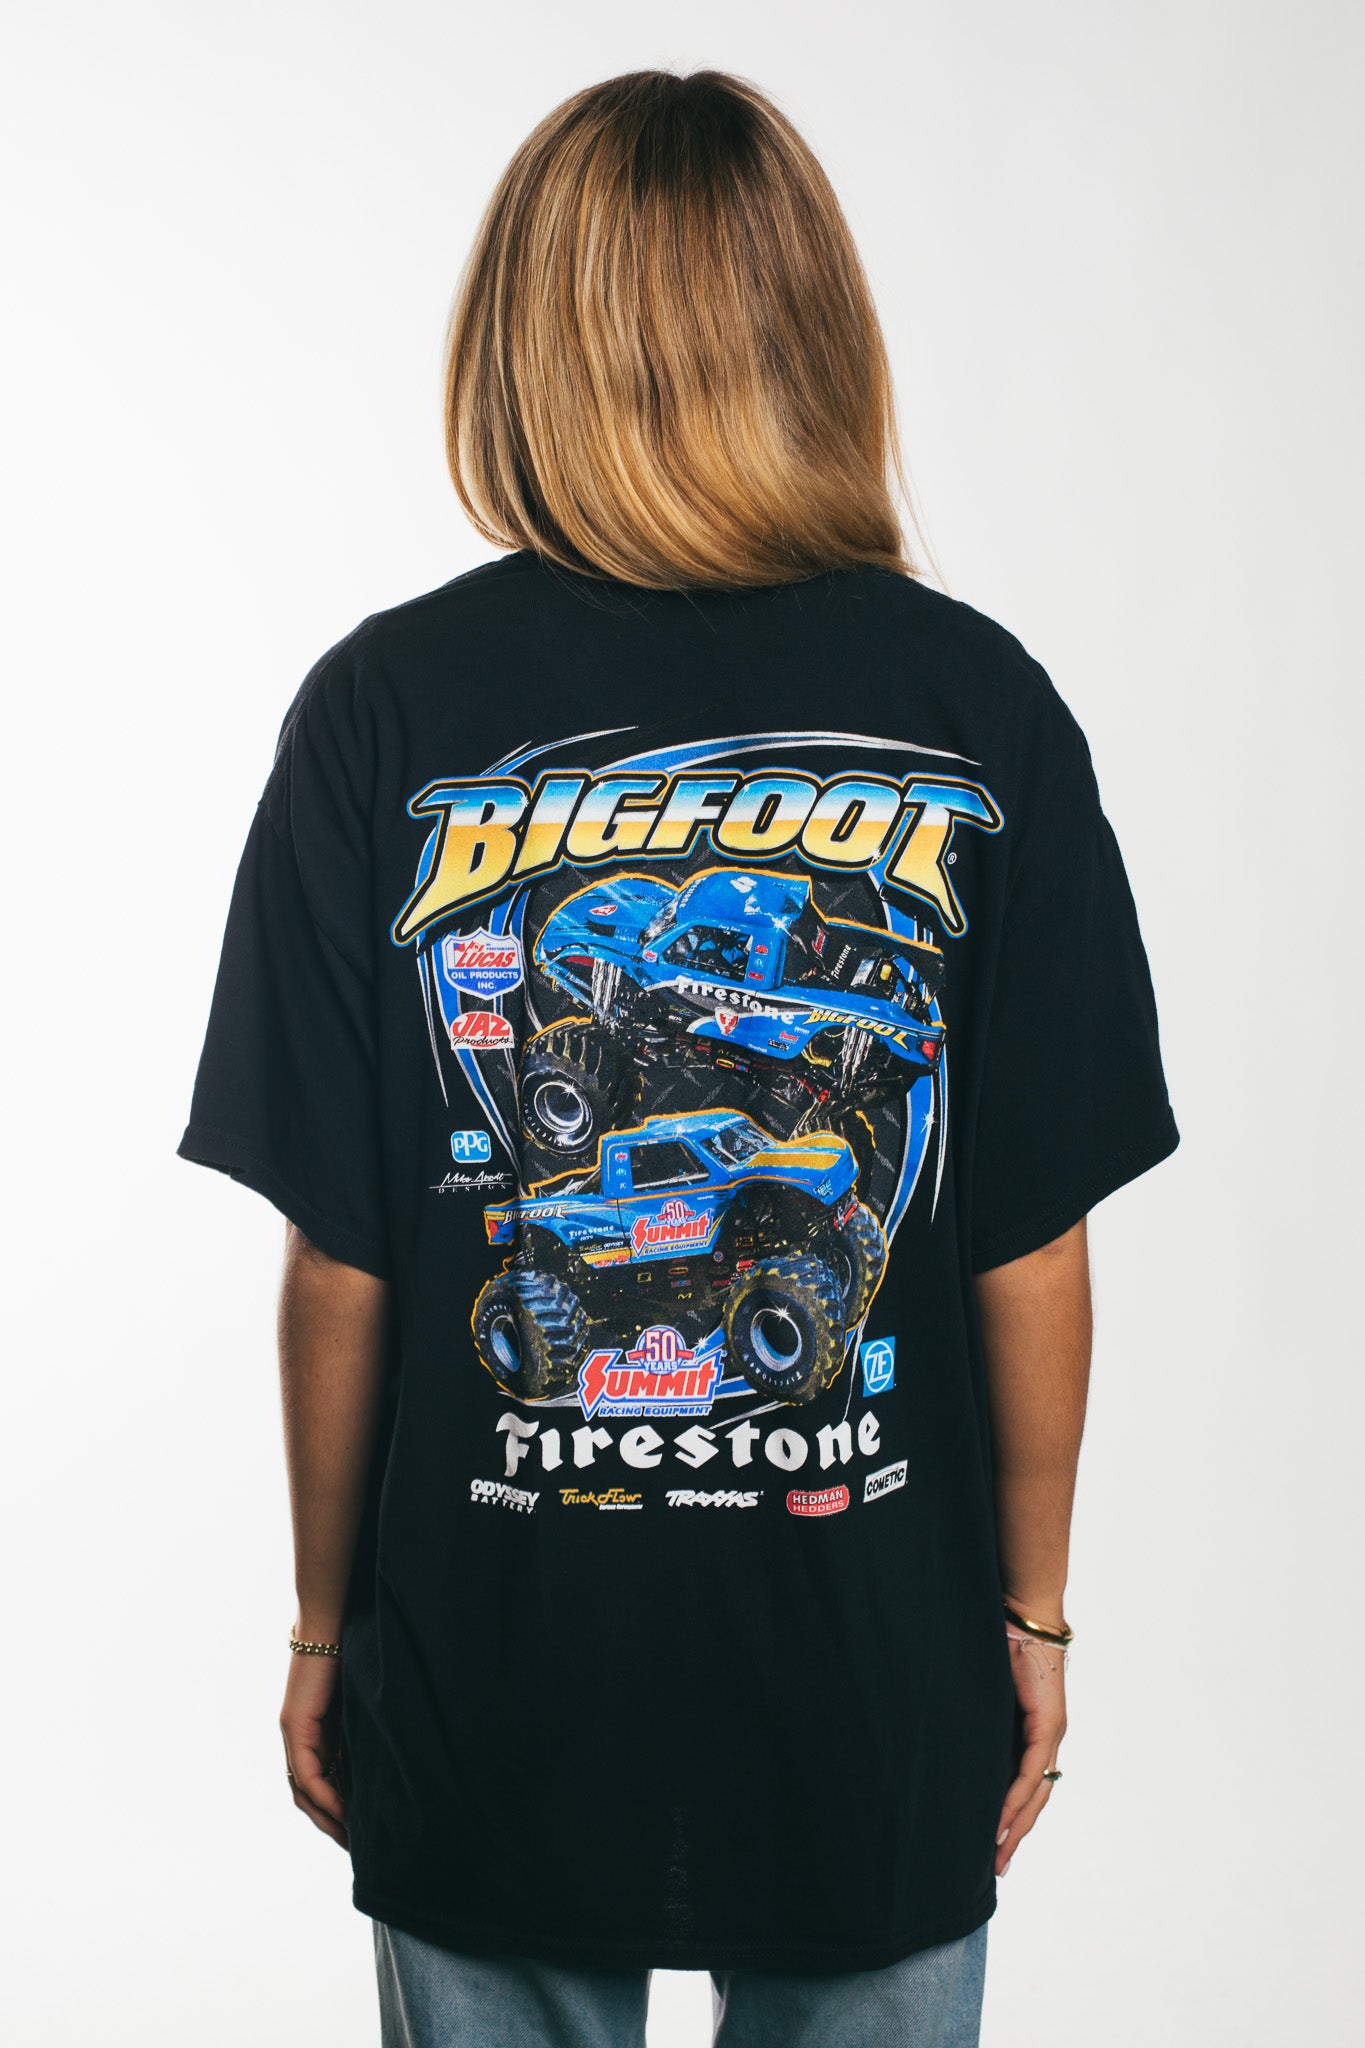 Bigfoot - T-Shirt (XL)